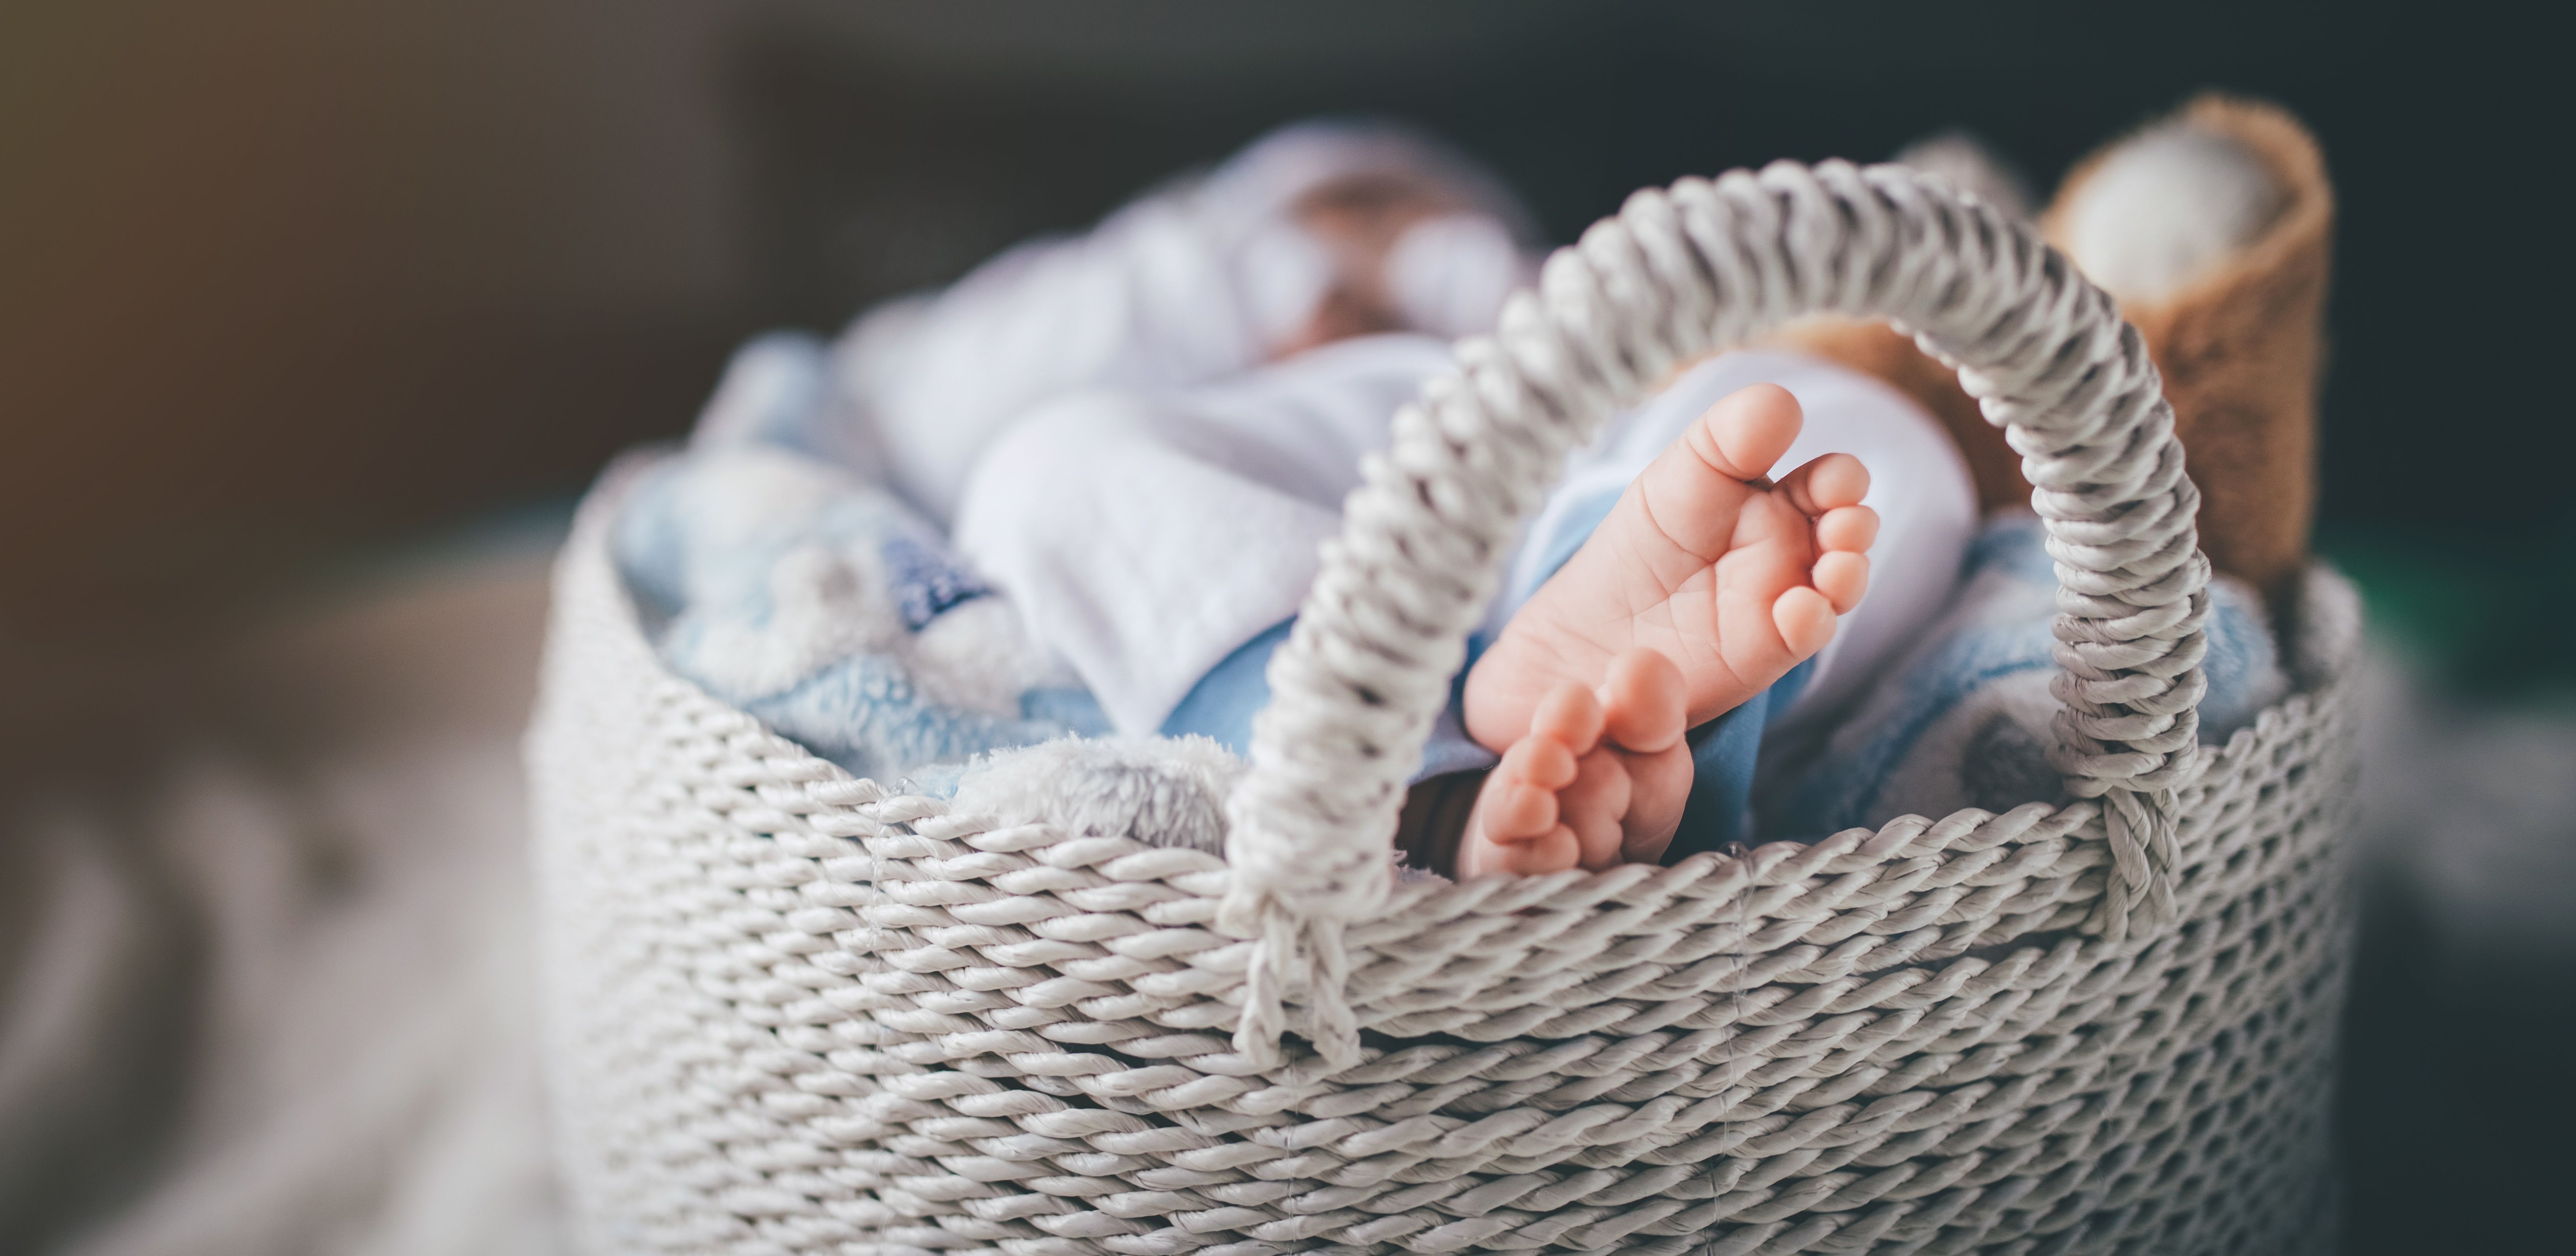 Les pieds d'un nouveau-né dans un panier. | Source : Getty Images